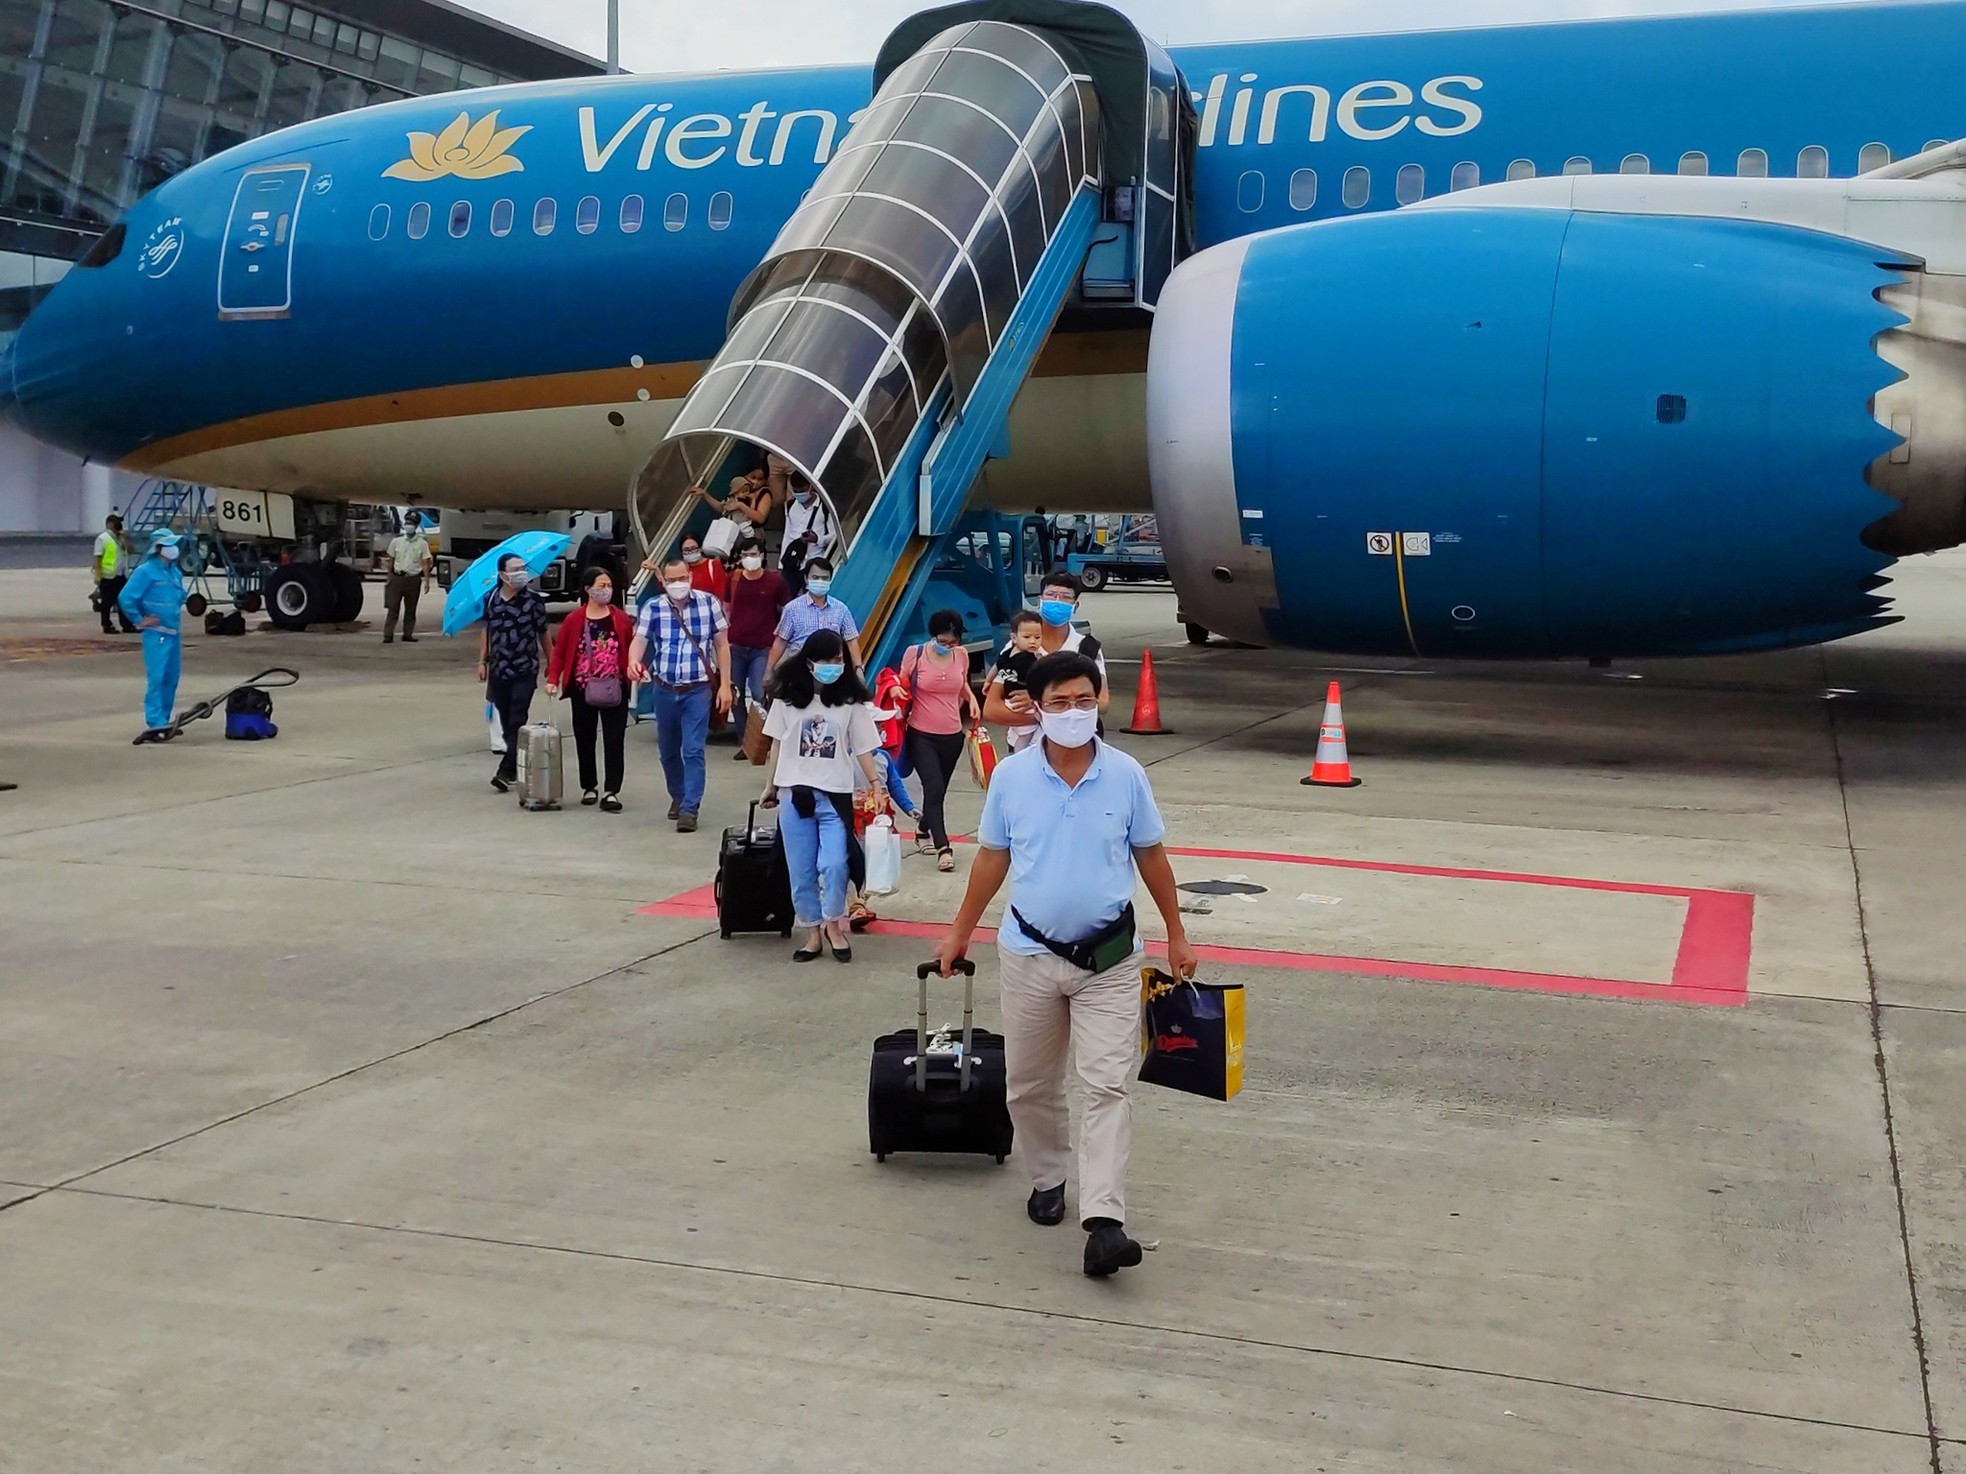 Giá vé máy bay và dịch vụ tăng cao, lo người Việt đổ xô du lịch nước ngoài - Ảnh 4.